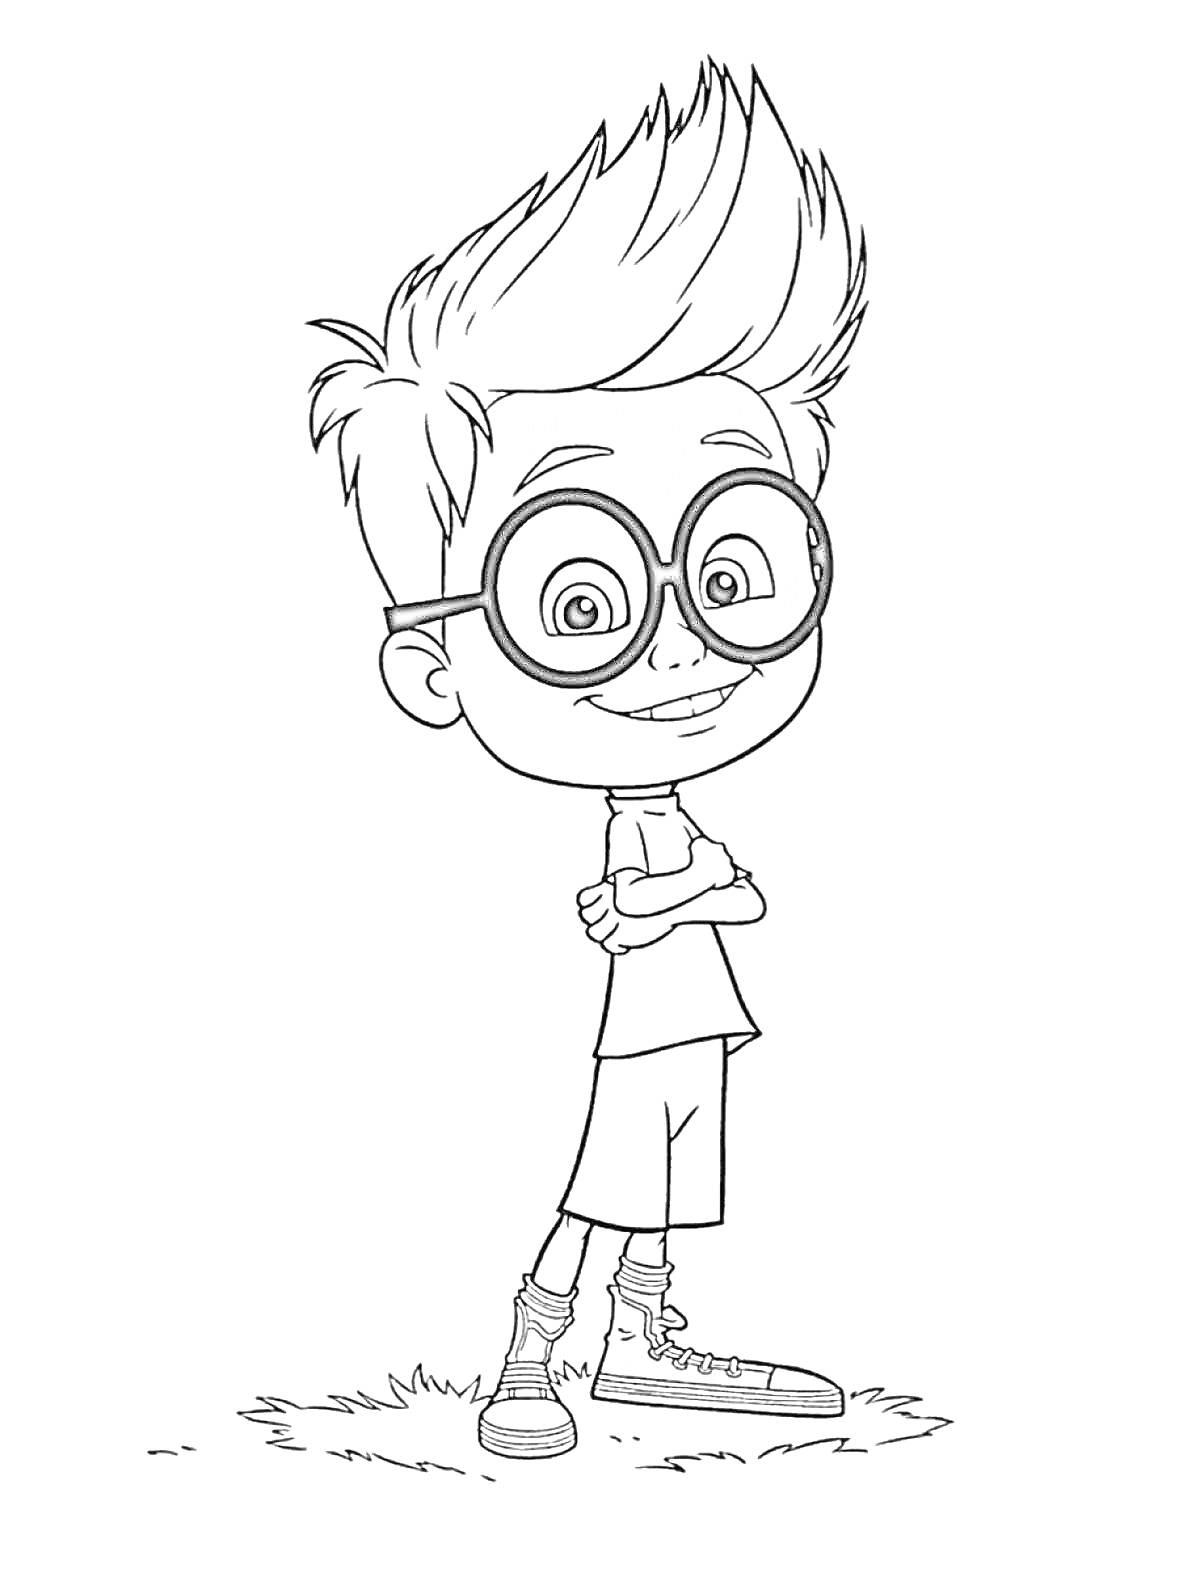 Раскраска Мальчик с очками, скрестивший руки, стоящий на траве